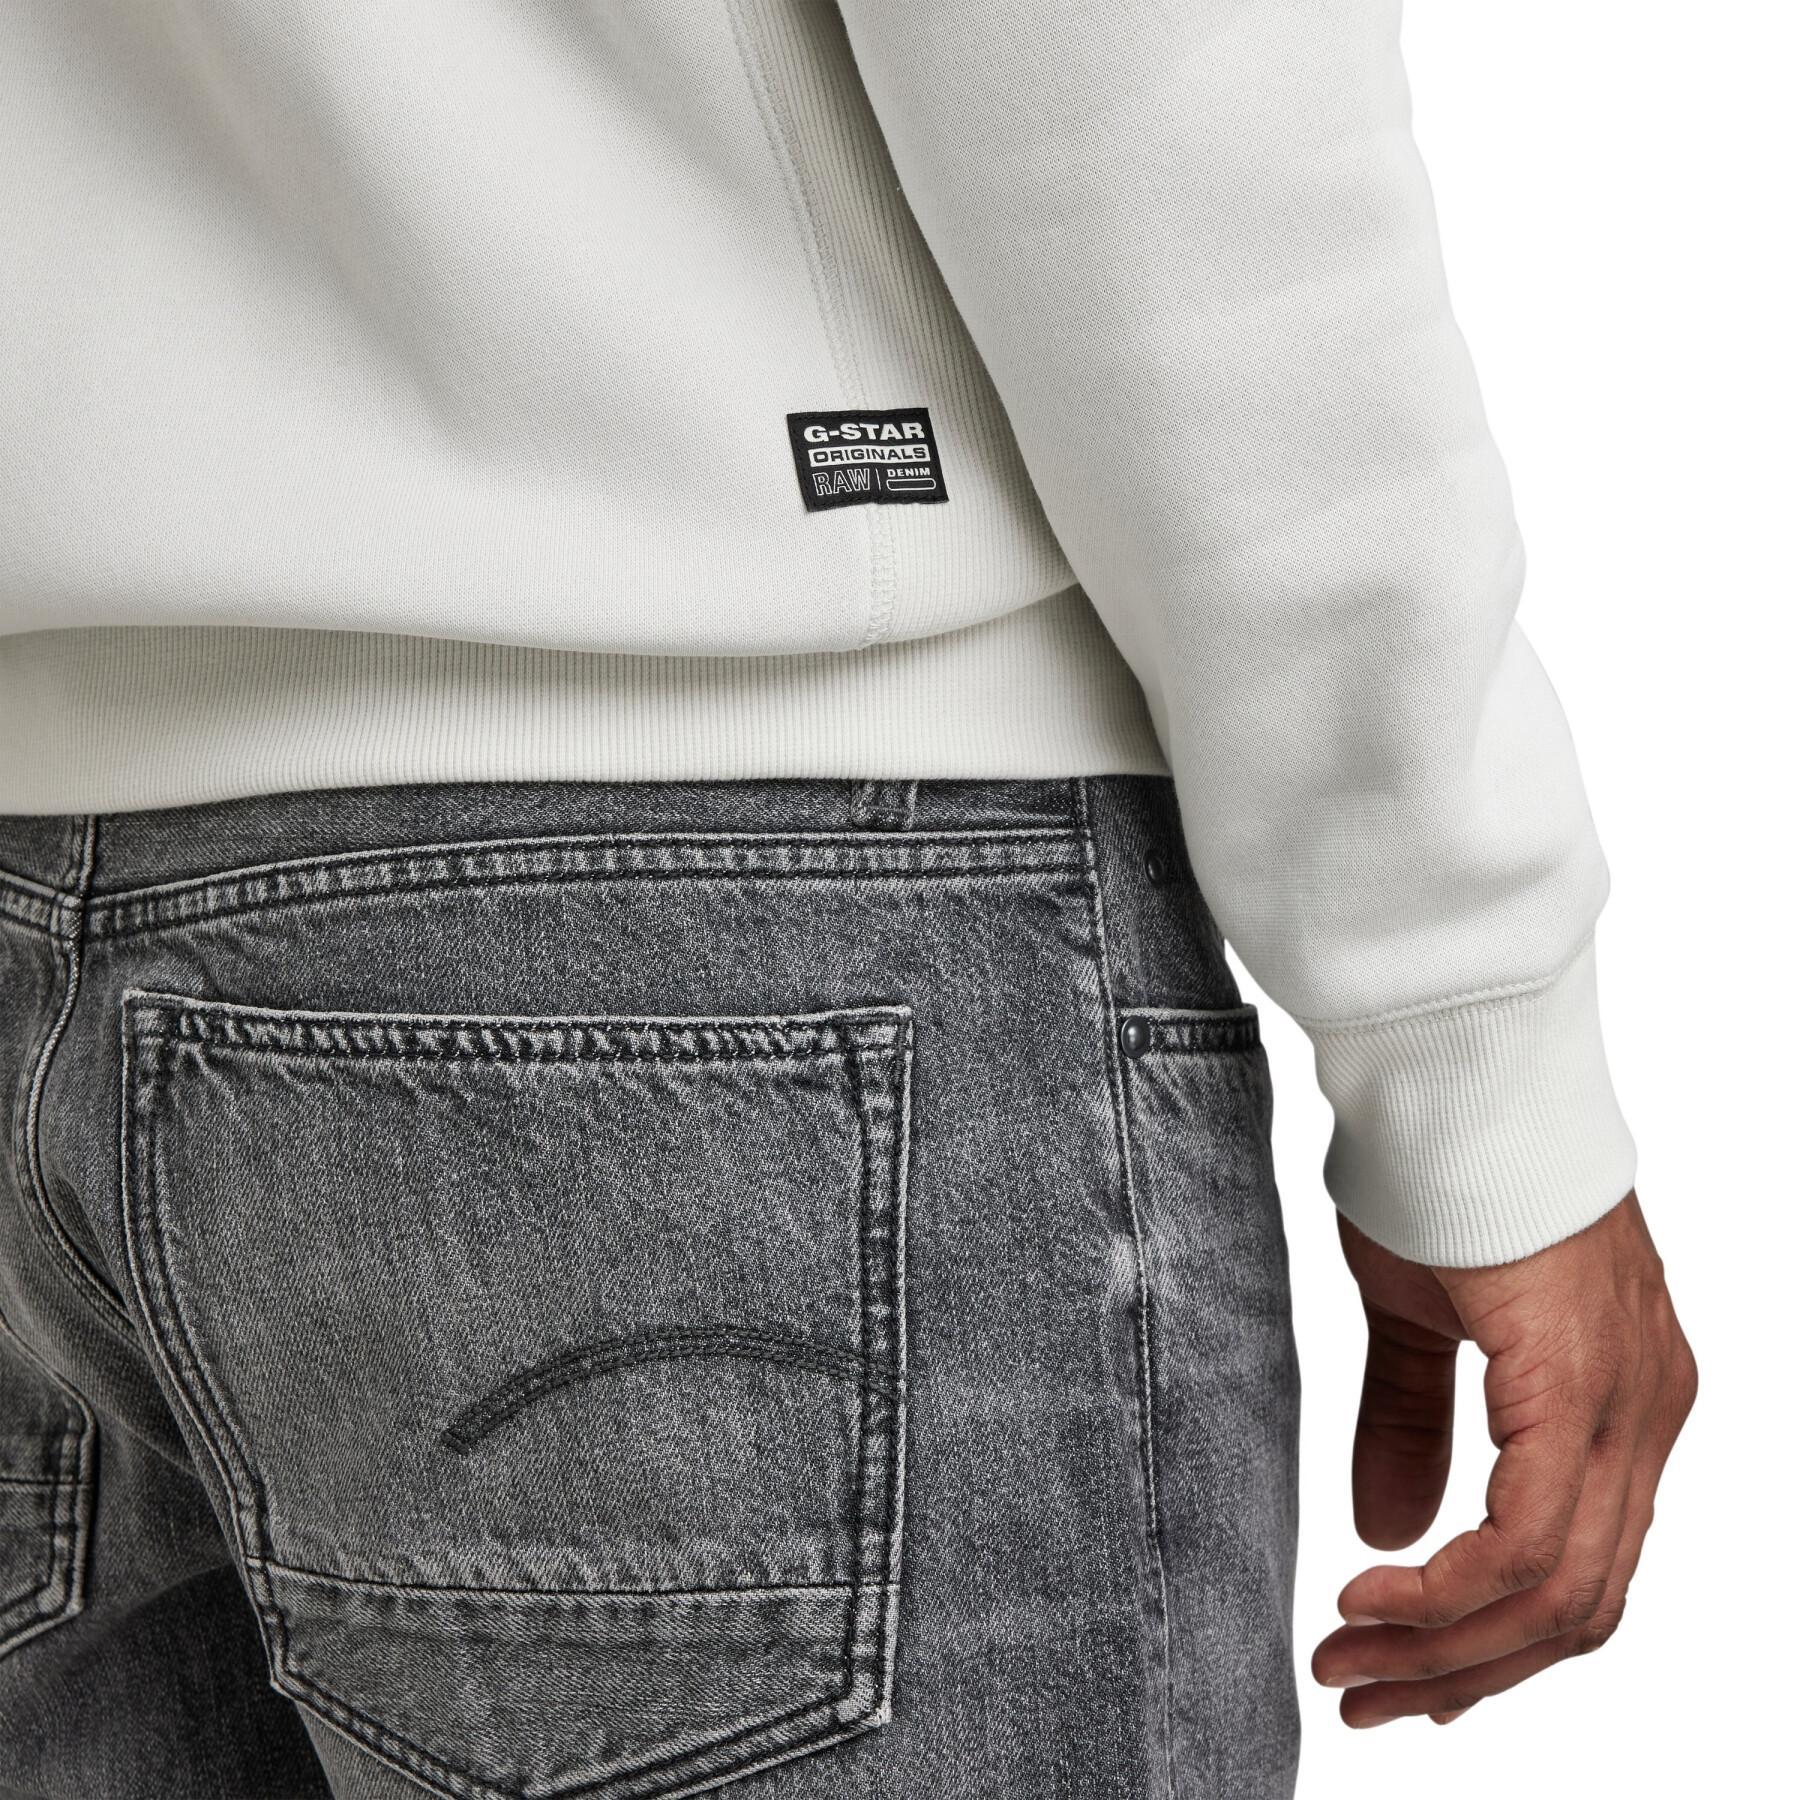 Sweatshirt zippé à capuche G-Star Premium Core